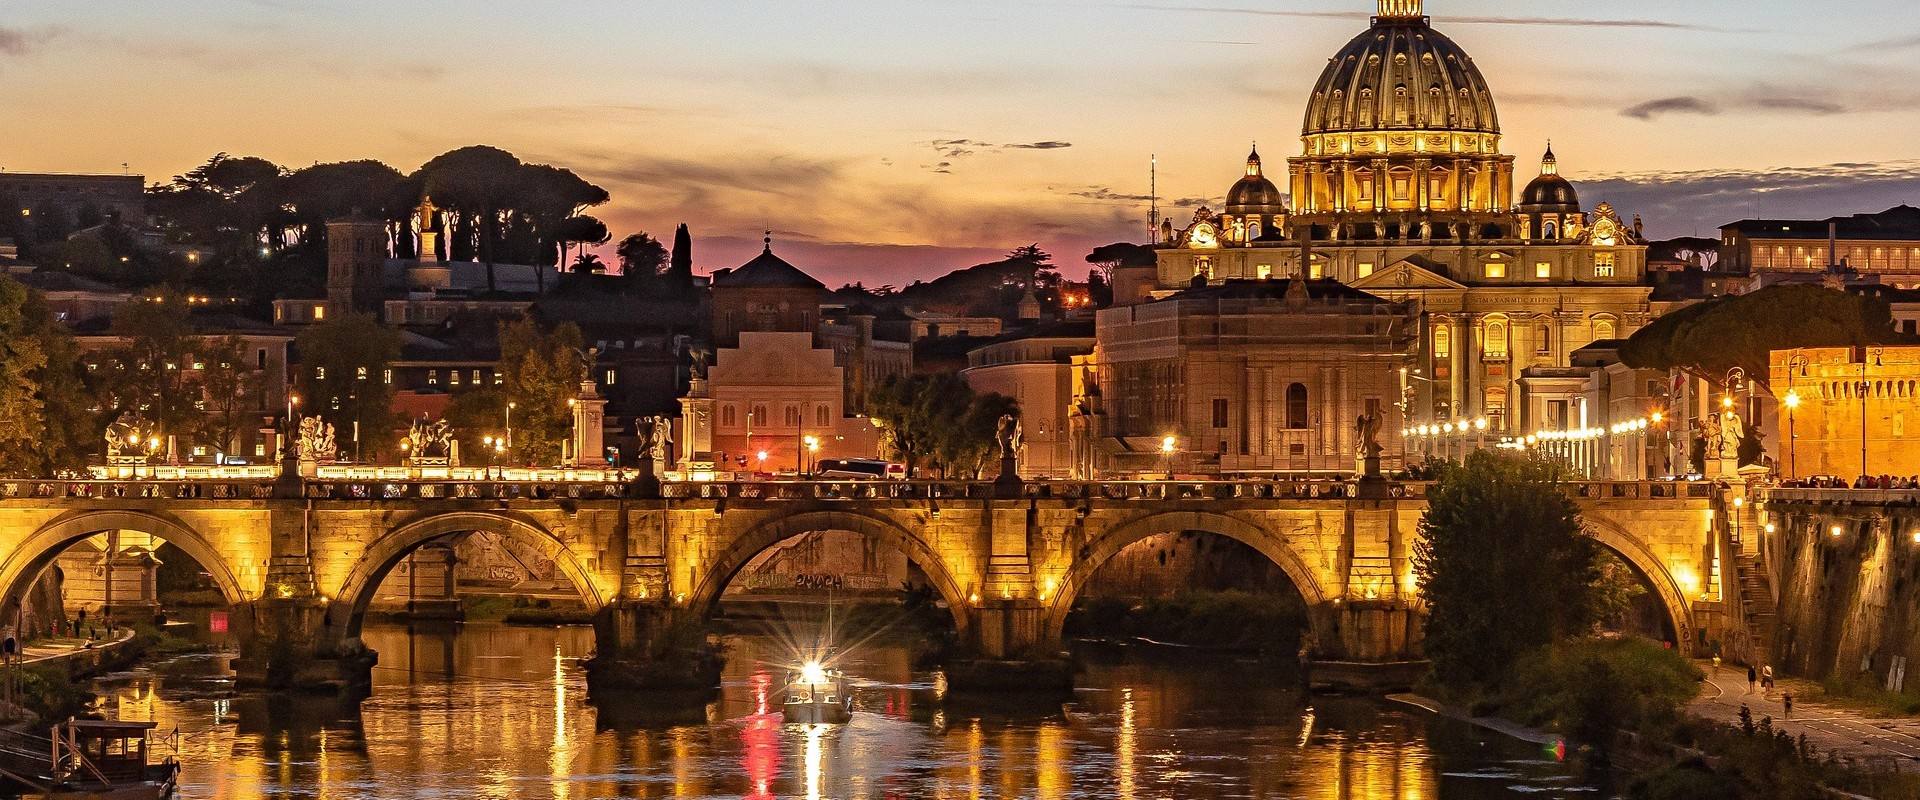 Az örök város Róma, Firenze csodái I.